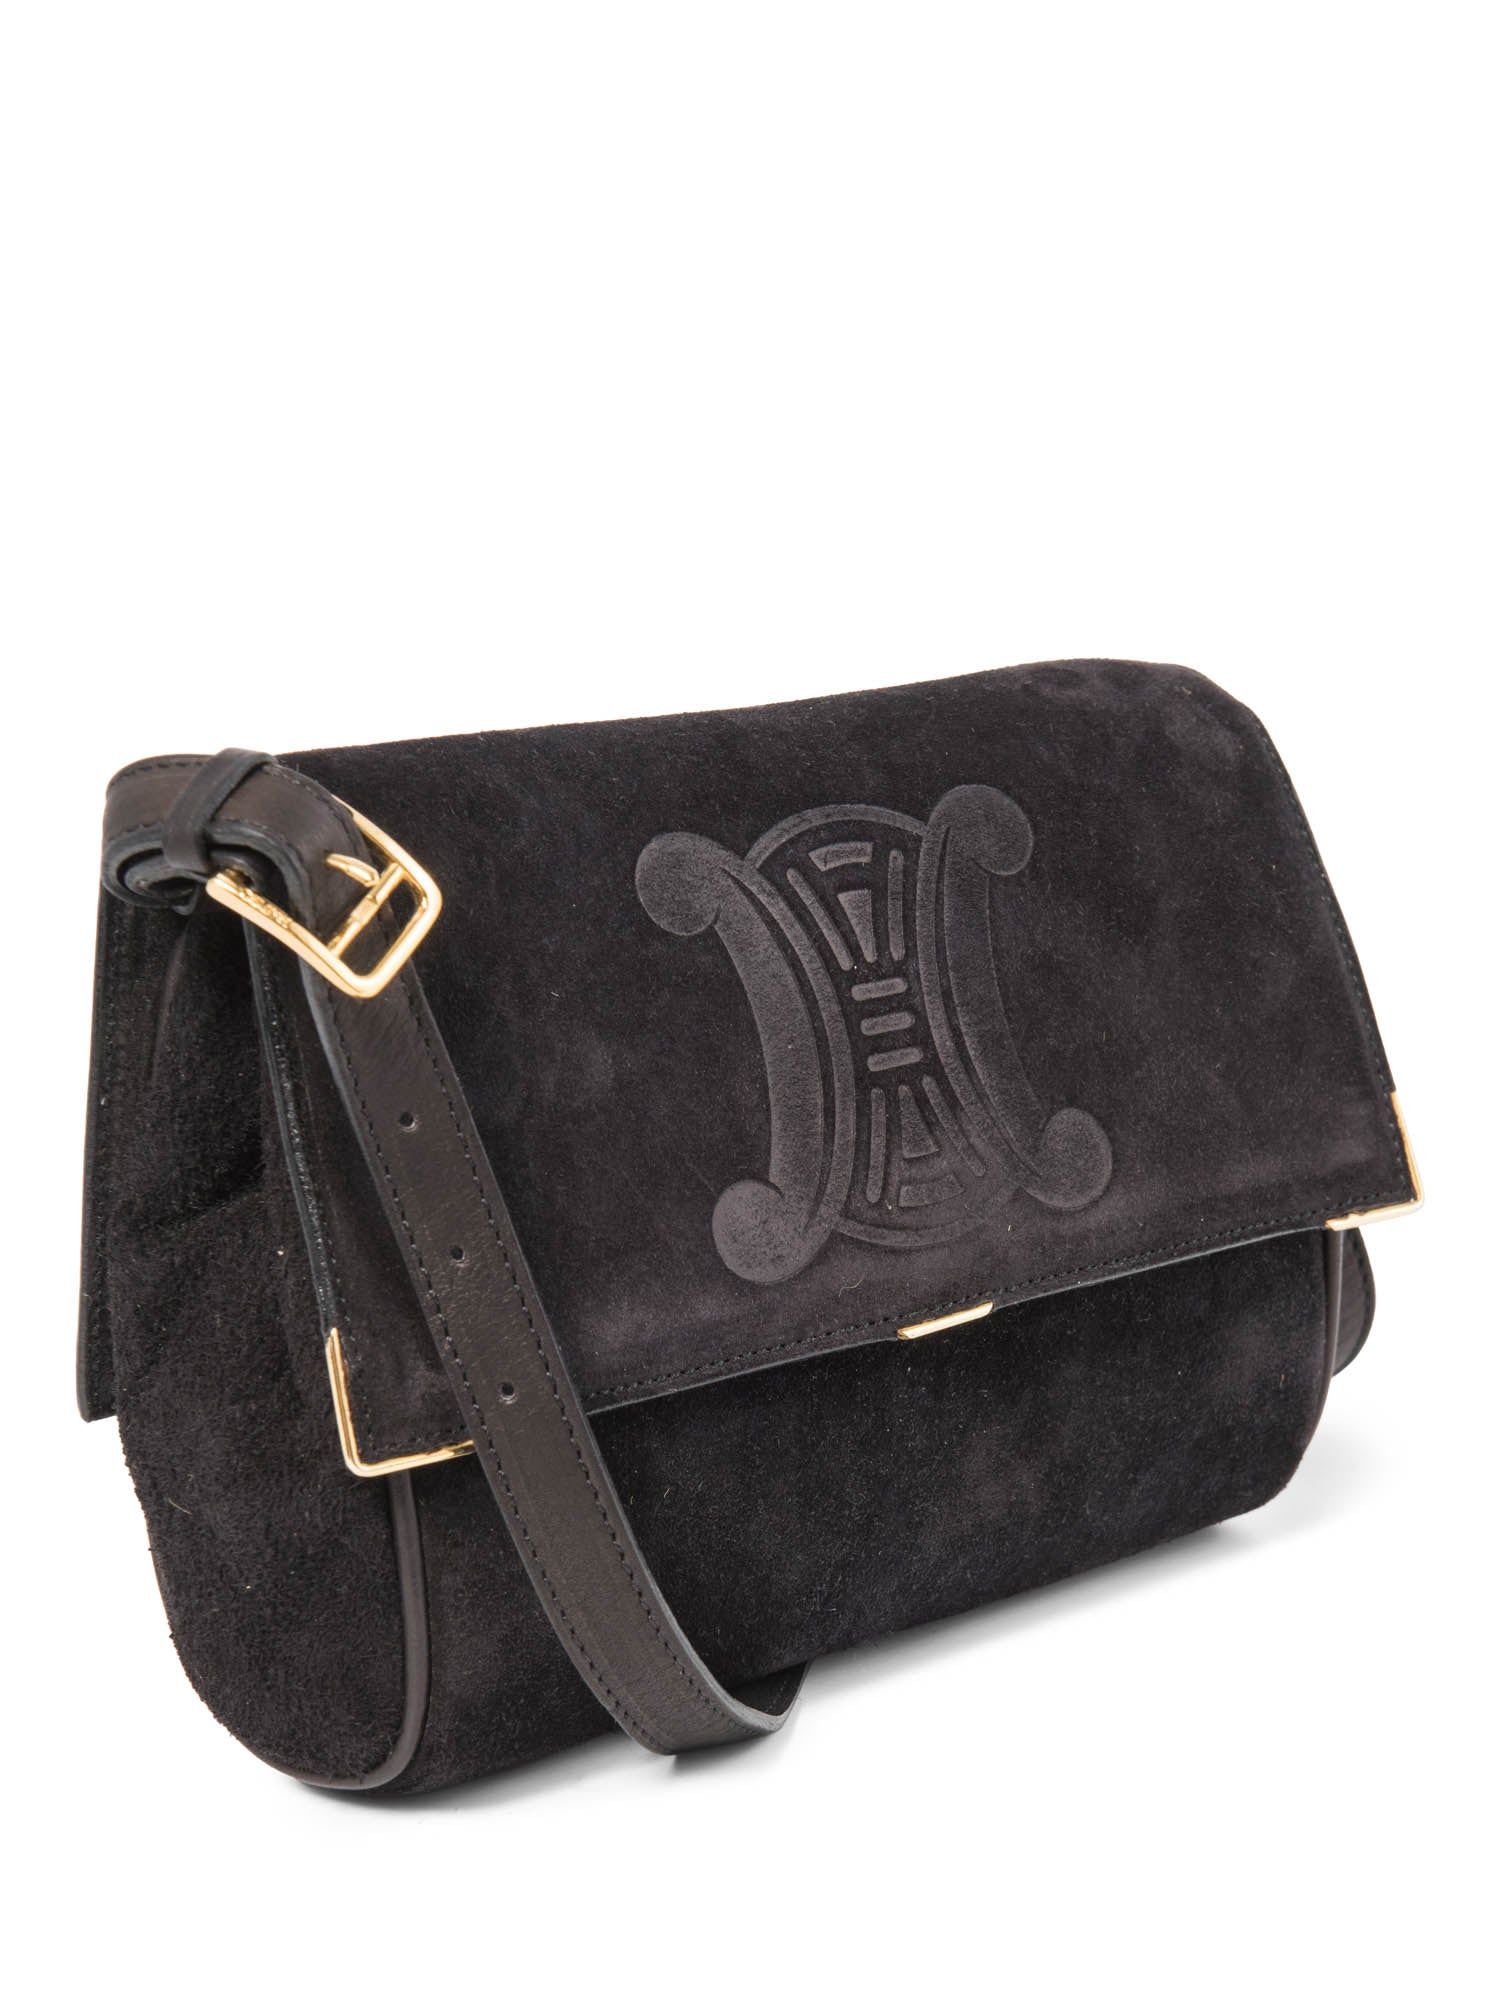 Celine Vintage Logo Debossed Suede Messenger Bag Black Gold-designer resale